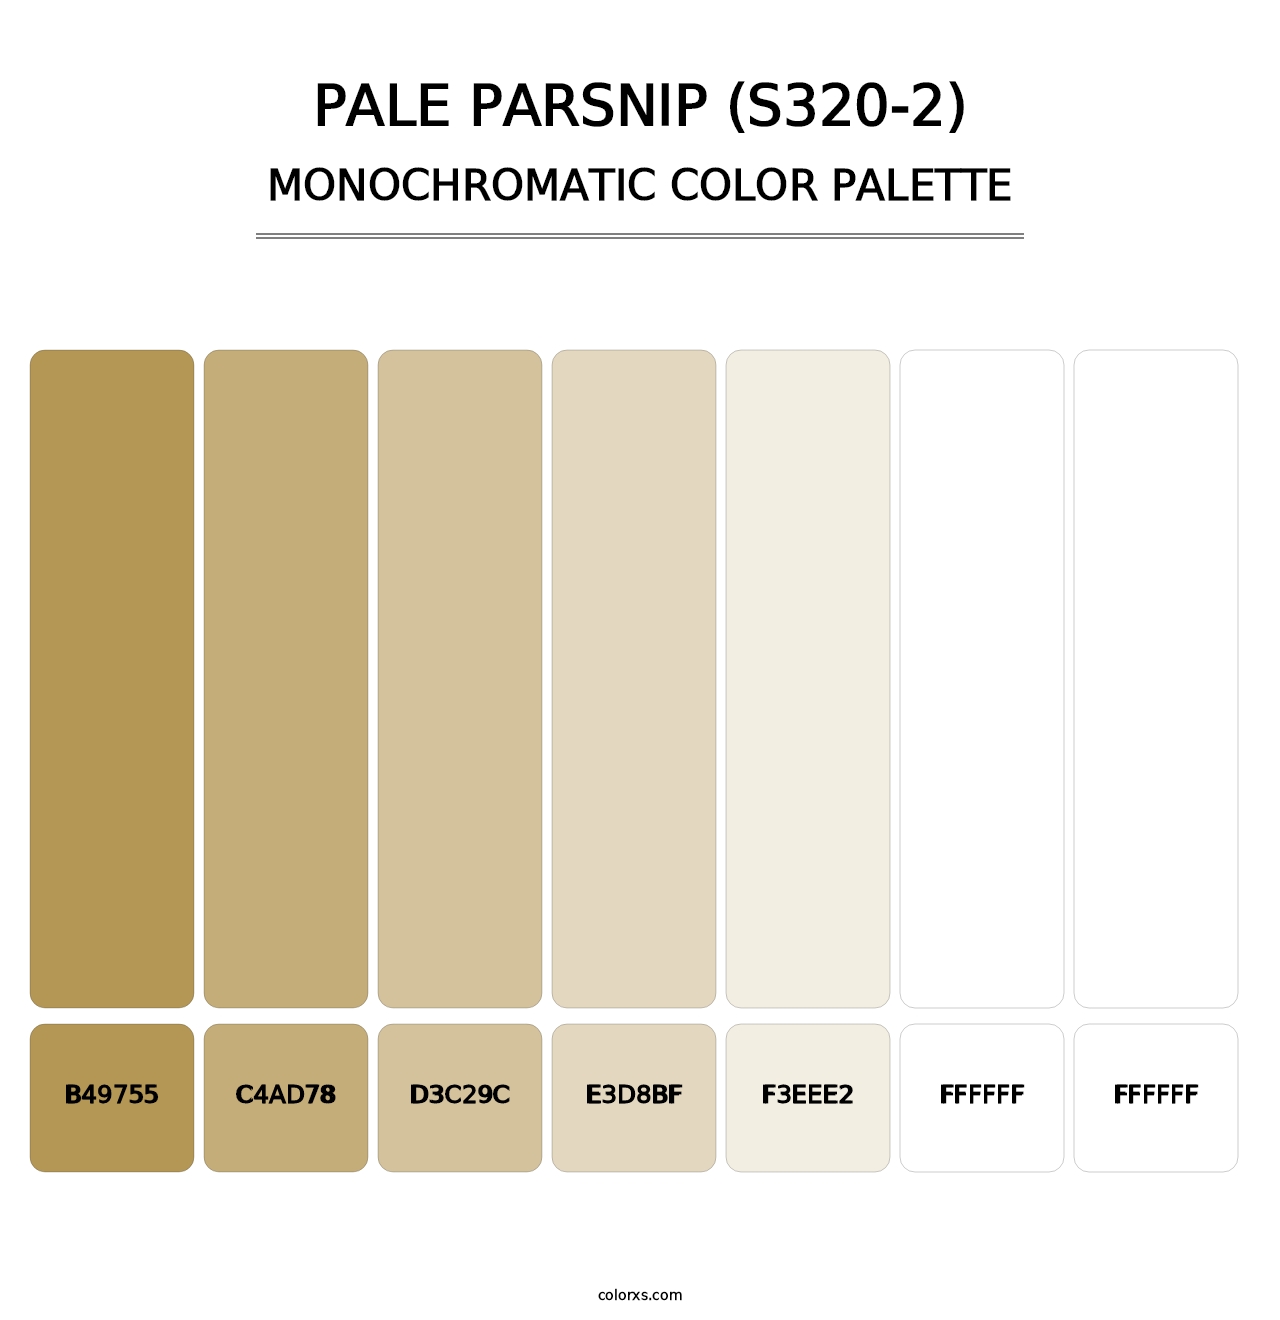 Pale Parsnip (S320-2) - Monochromatic Color Palette